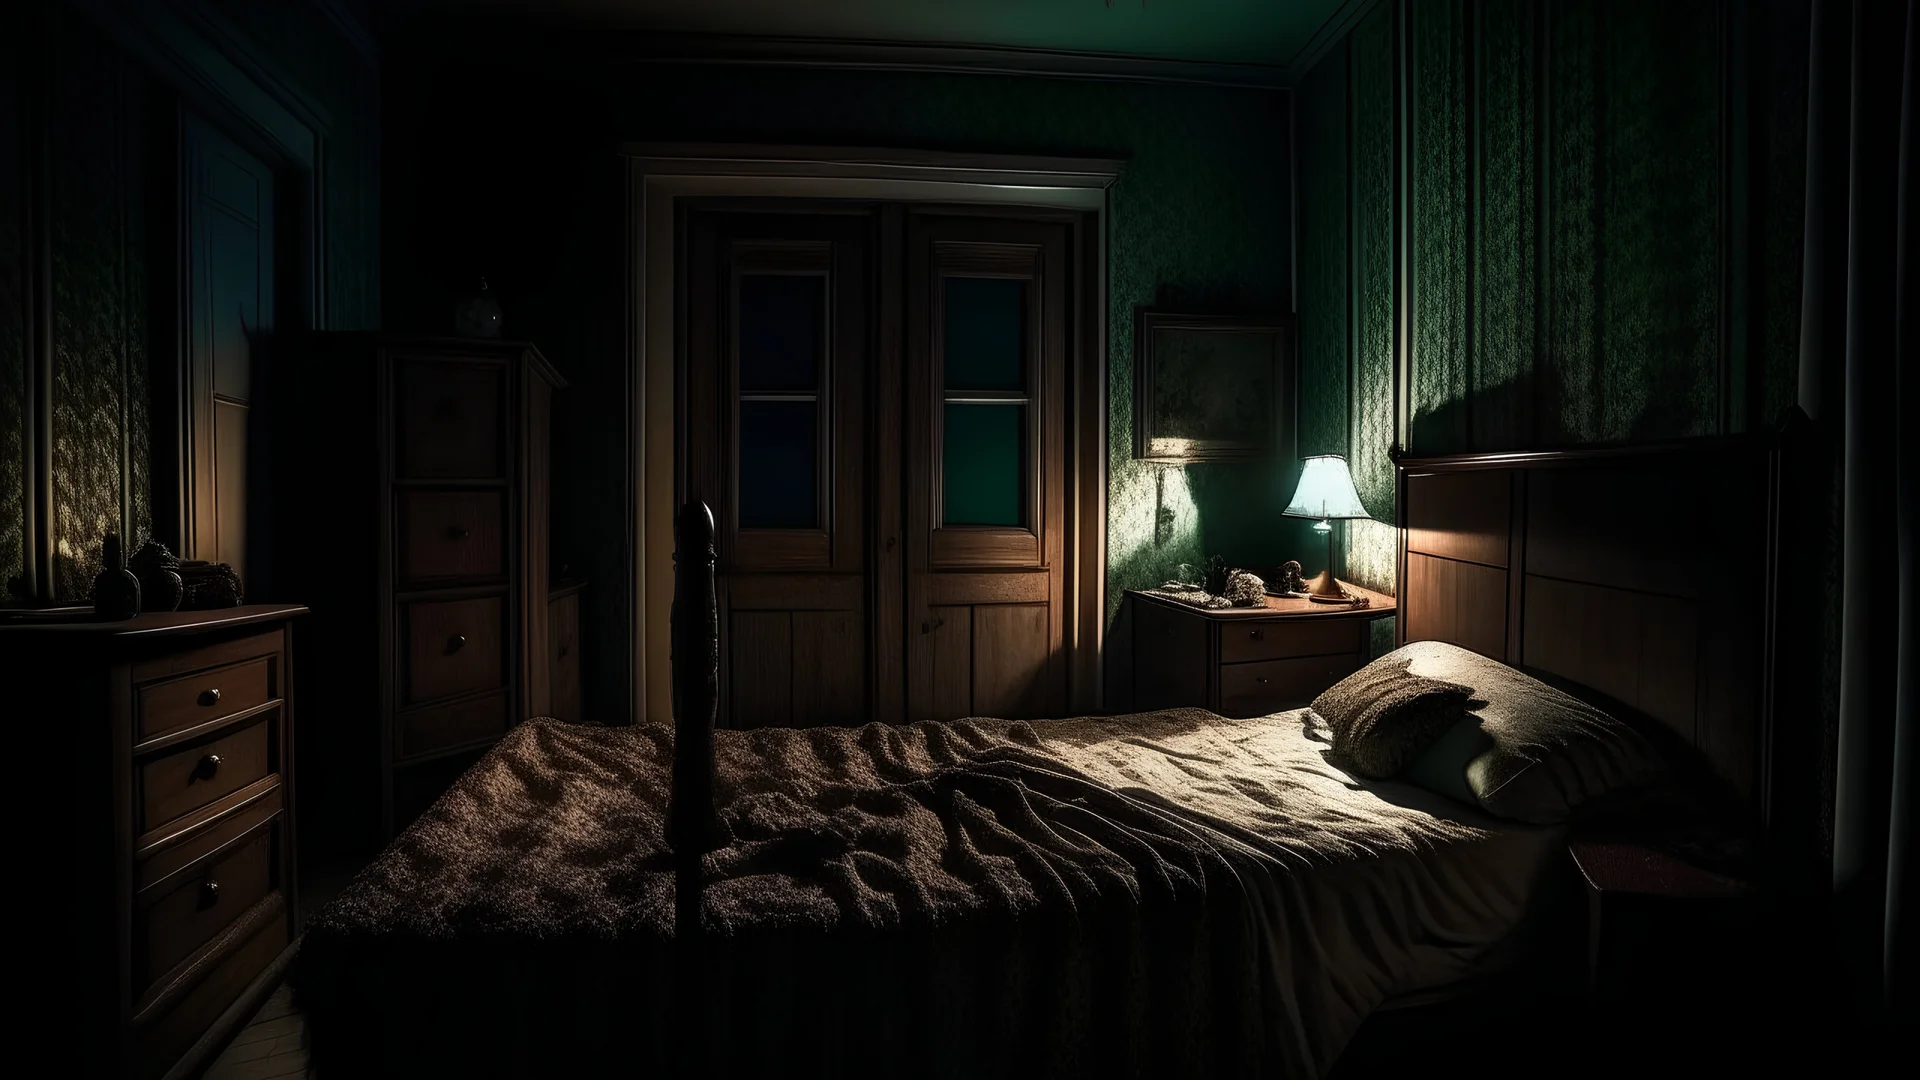 burer in bedroom in night, scary scene